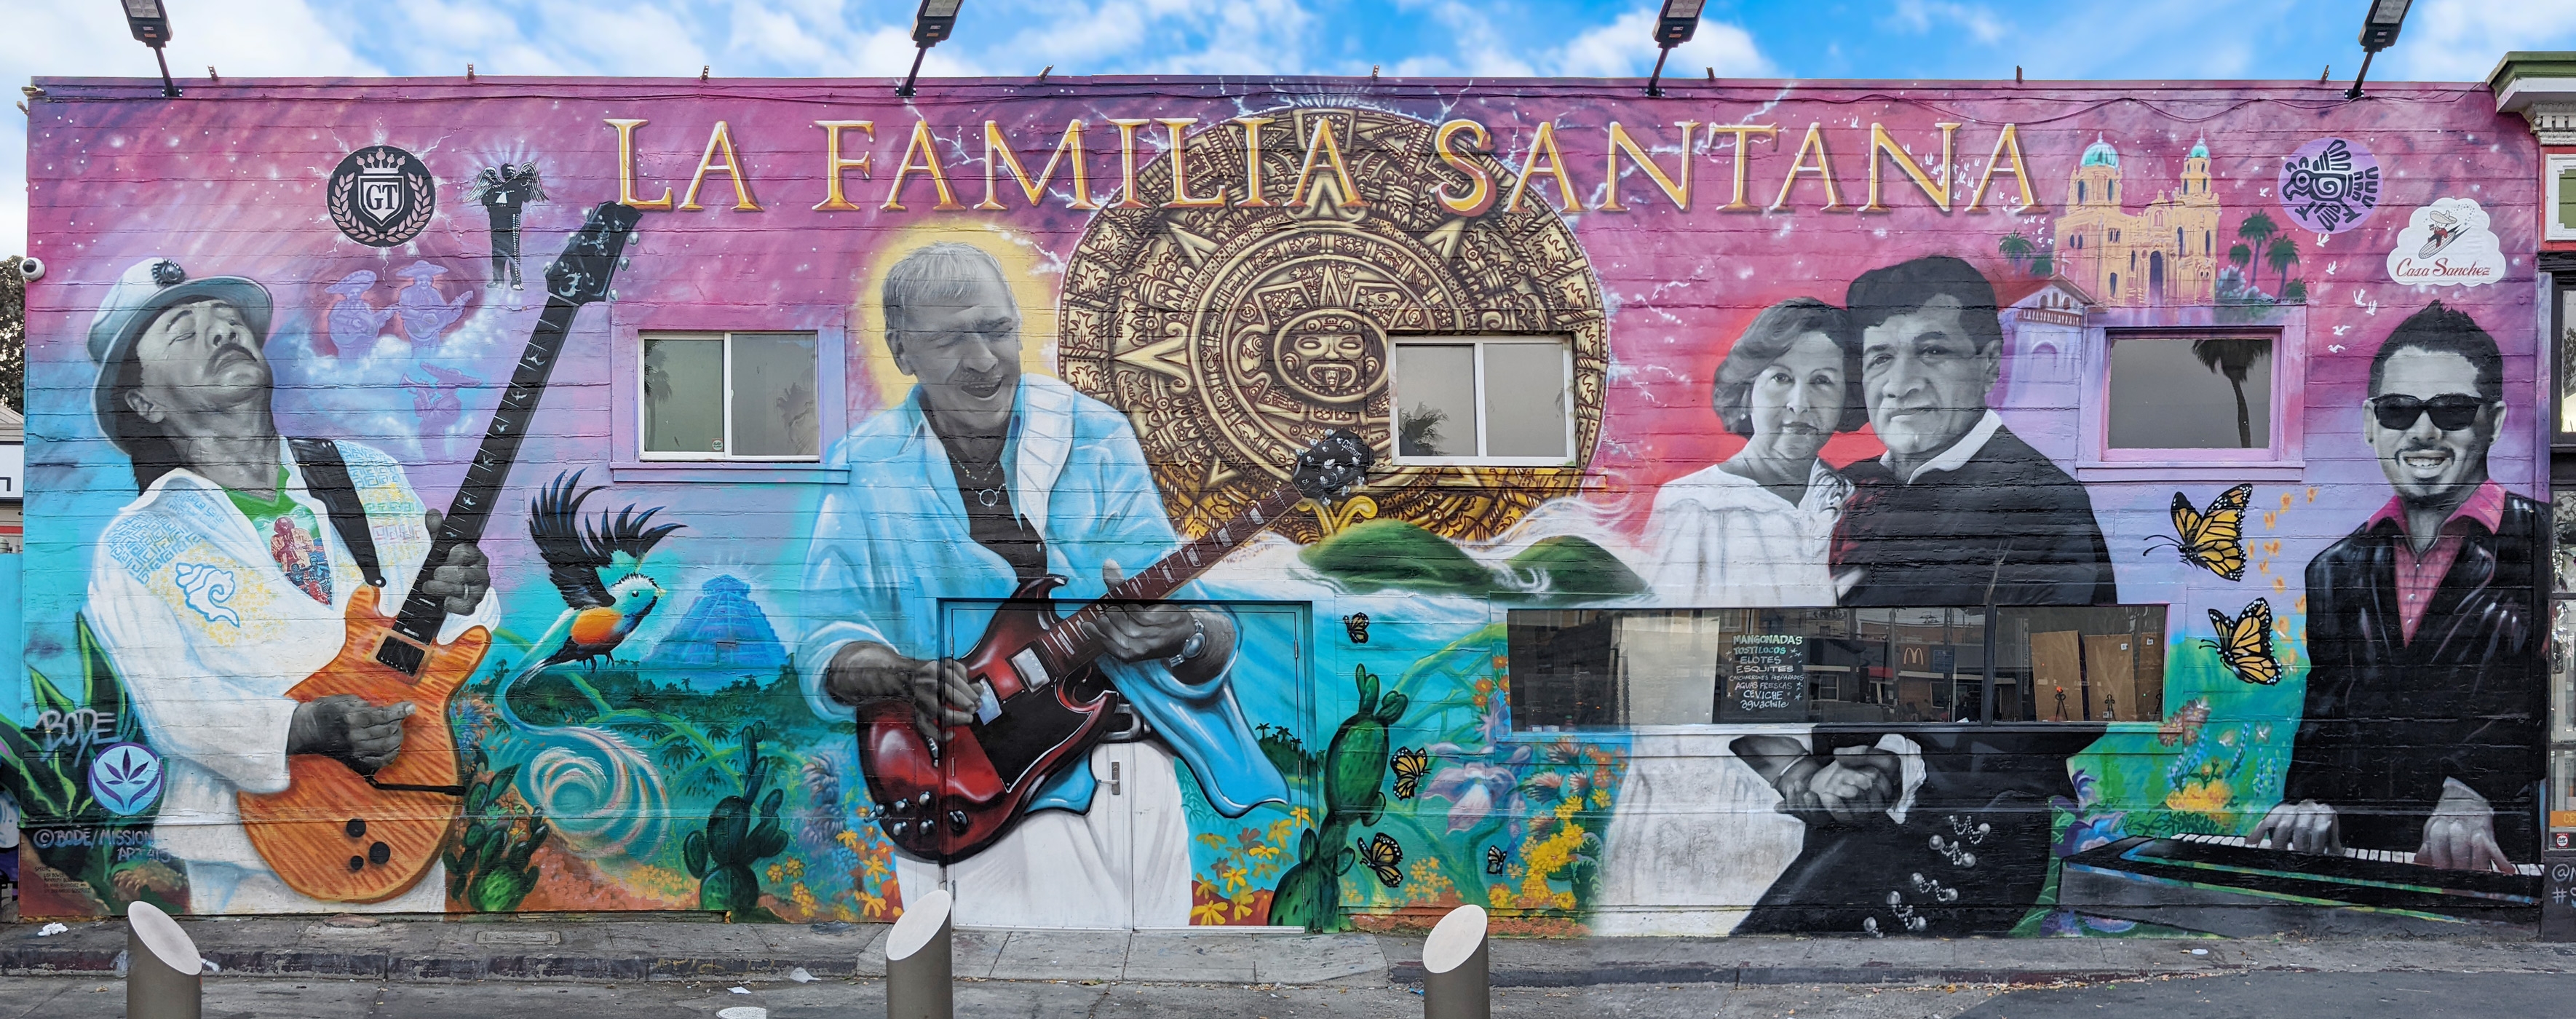 Carlos Santana Family Mural